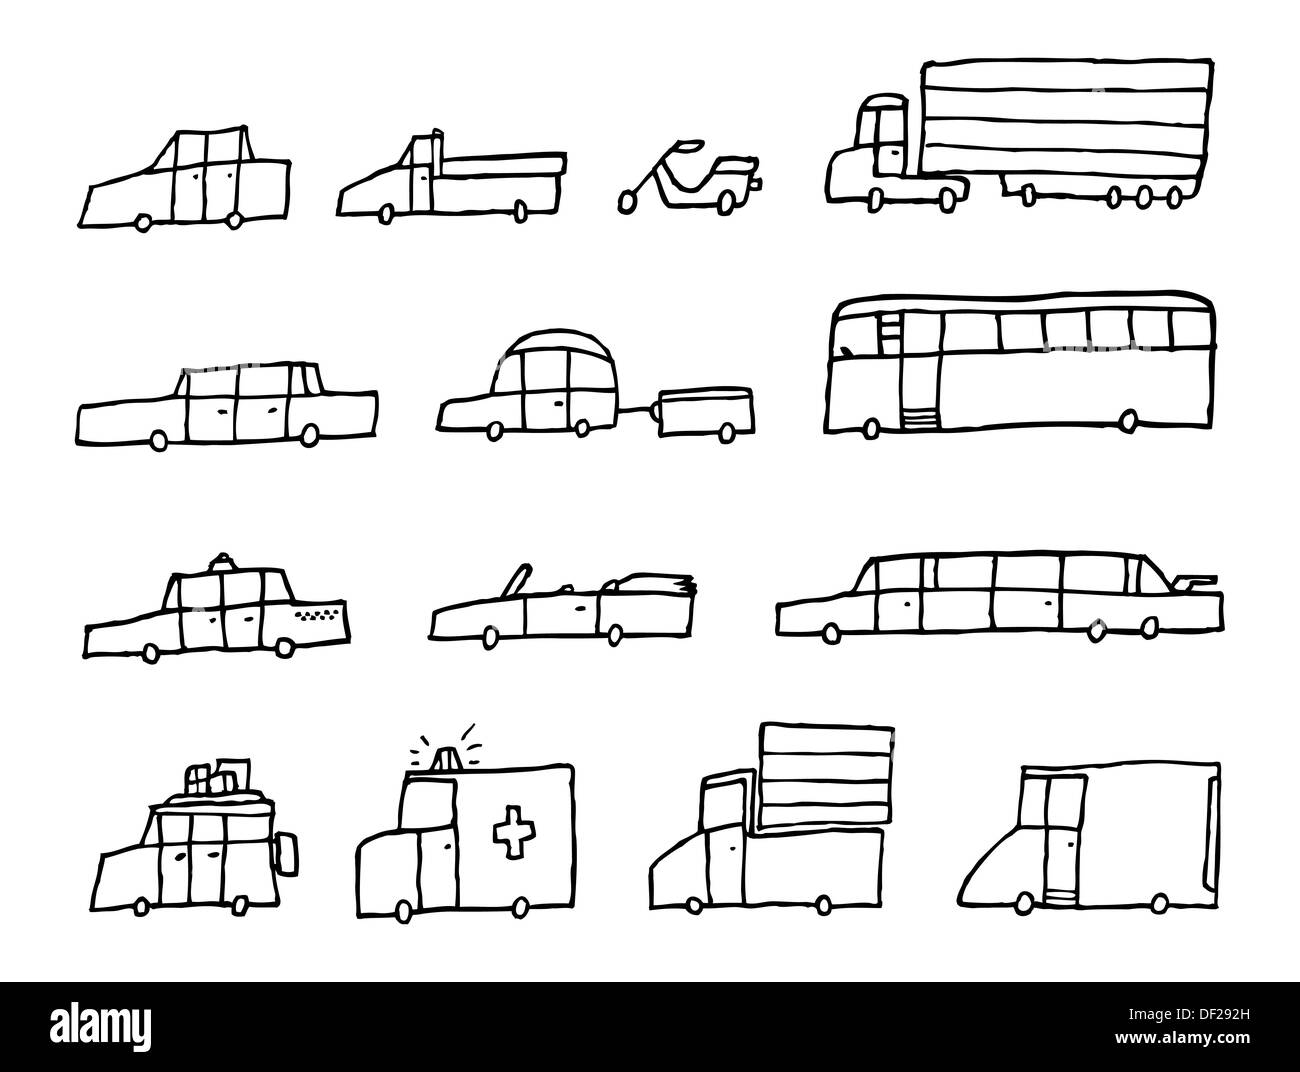 Cartoon Funny cars / véhicules de transport Banque D'Images